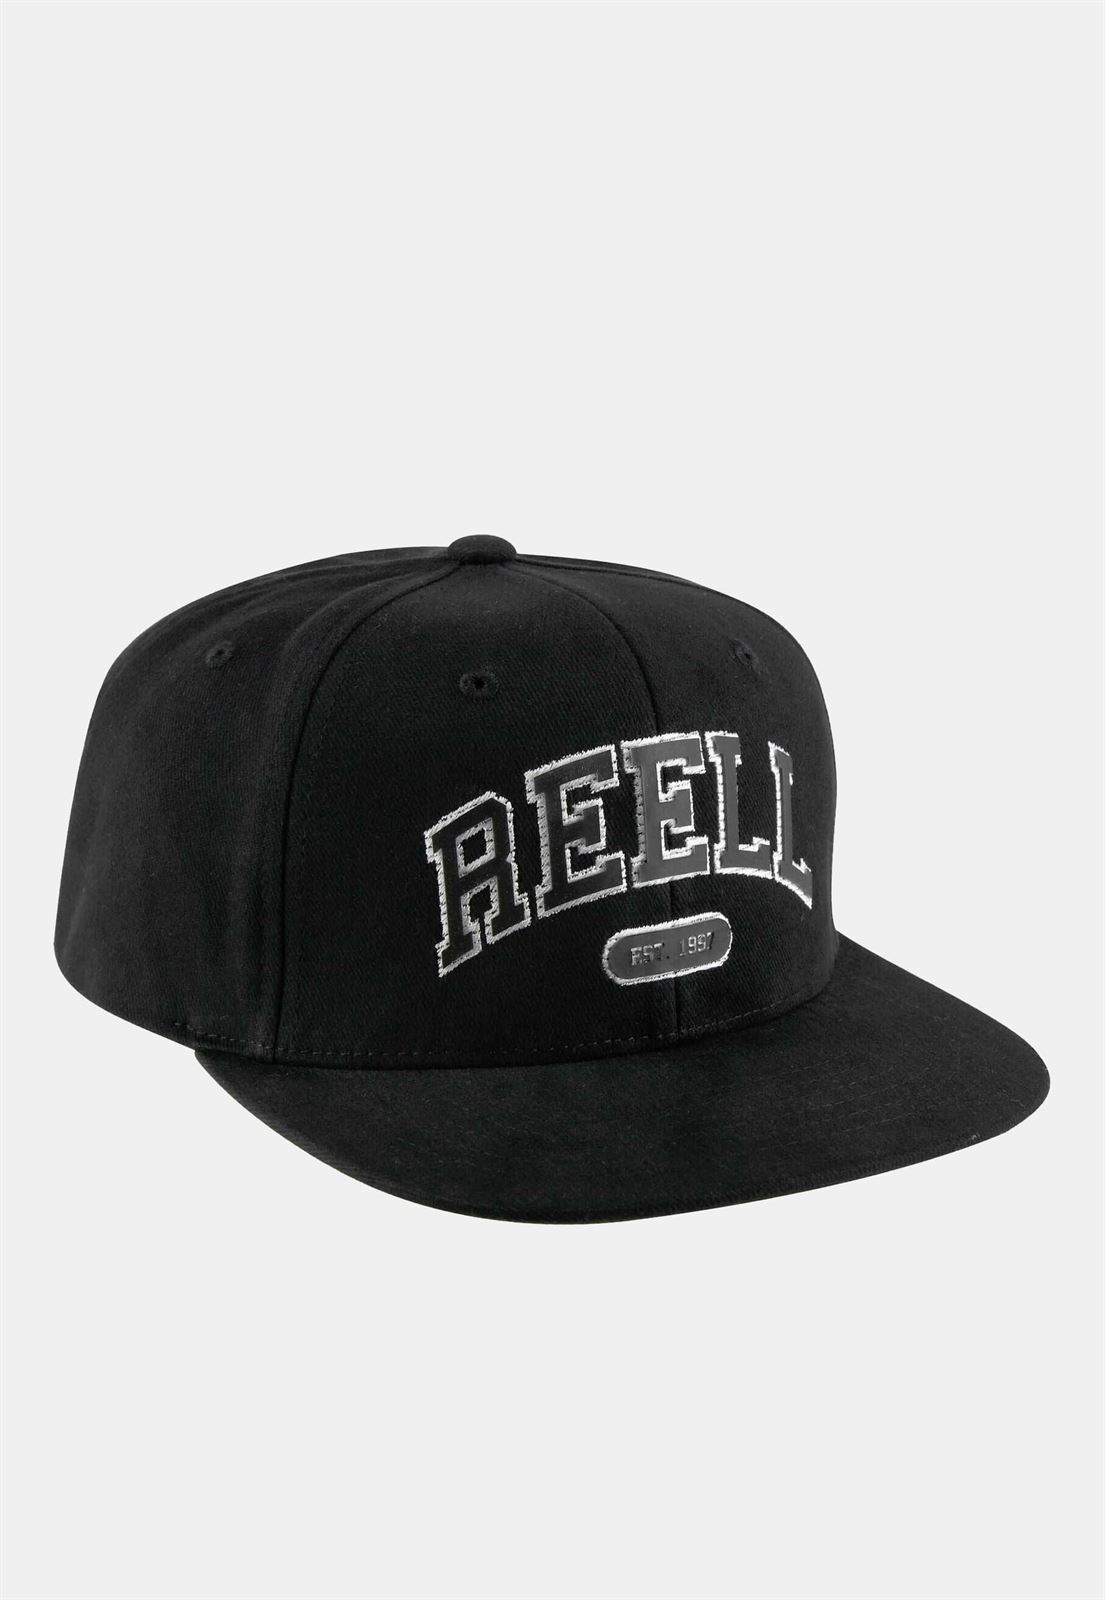 Gorra Reell TEAM CAP BLACK - Imagen 3